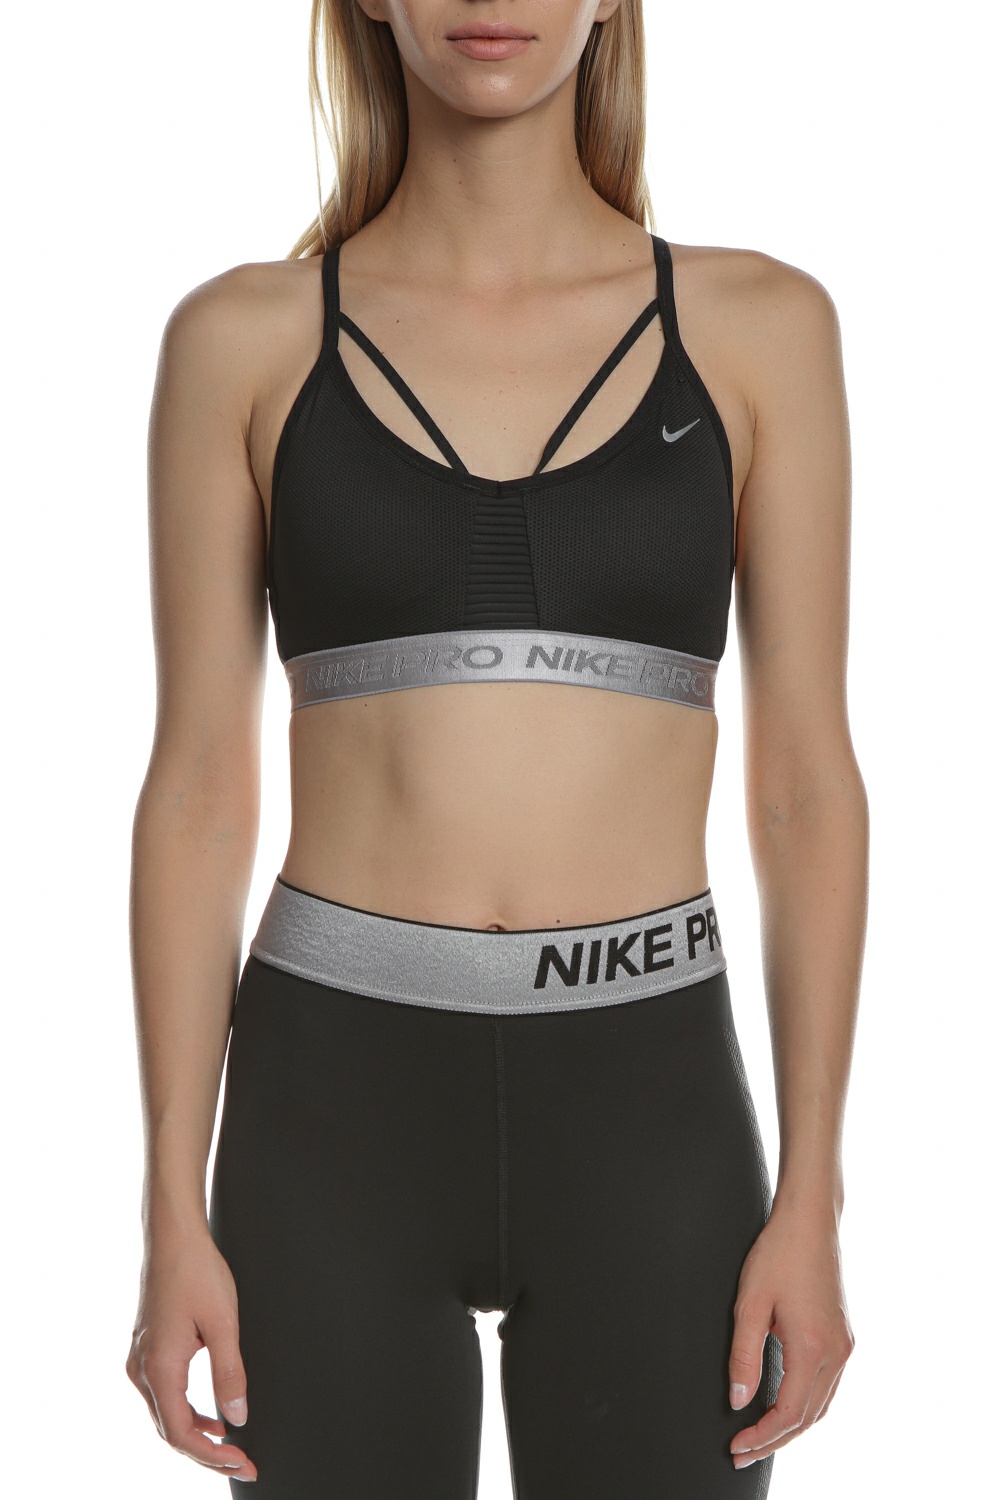 Γυναικεία/Ρούχα/Αθλητικά/Μπουστάκια NIKE - Γυναικείο αθλητικό μπουστάκι Nike Indy Aeroadapt μαύρο-ασημί